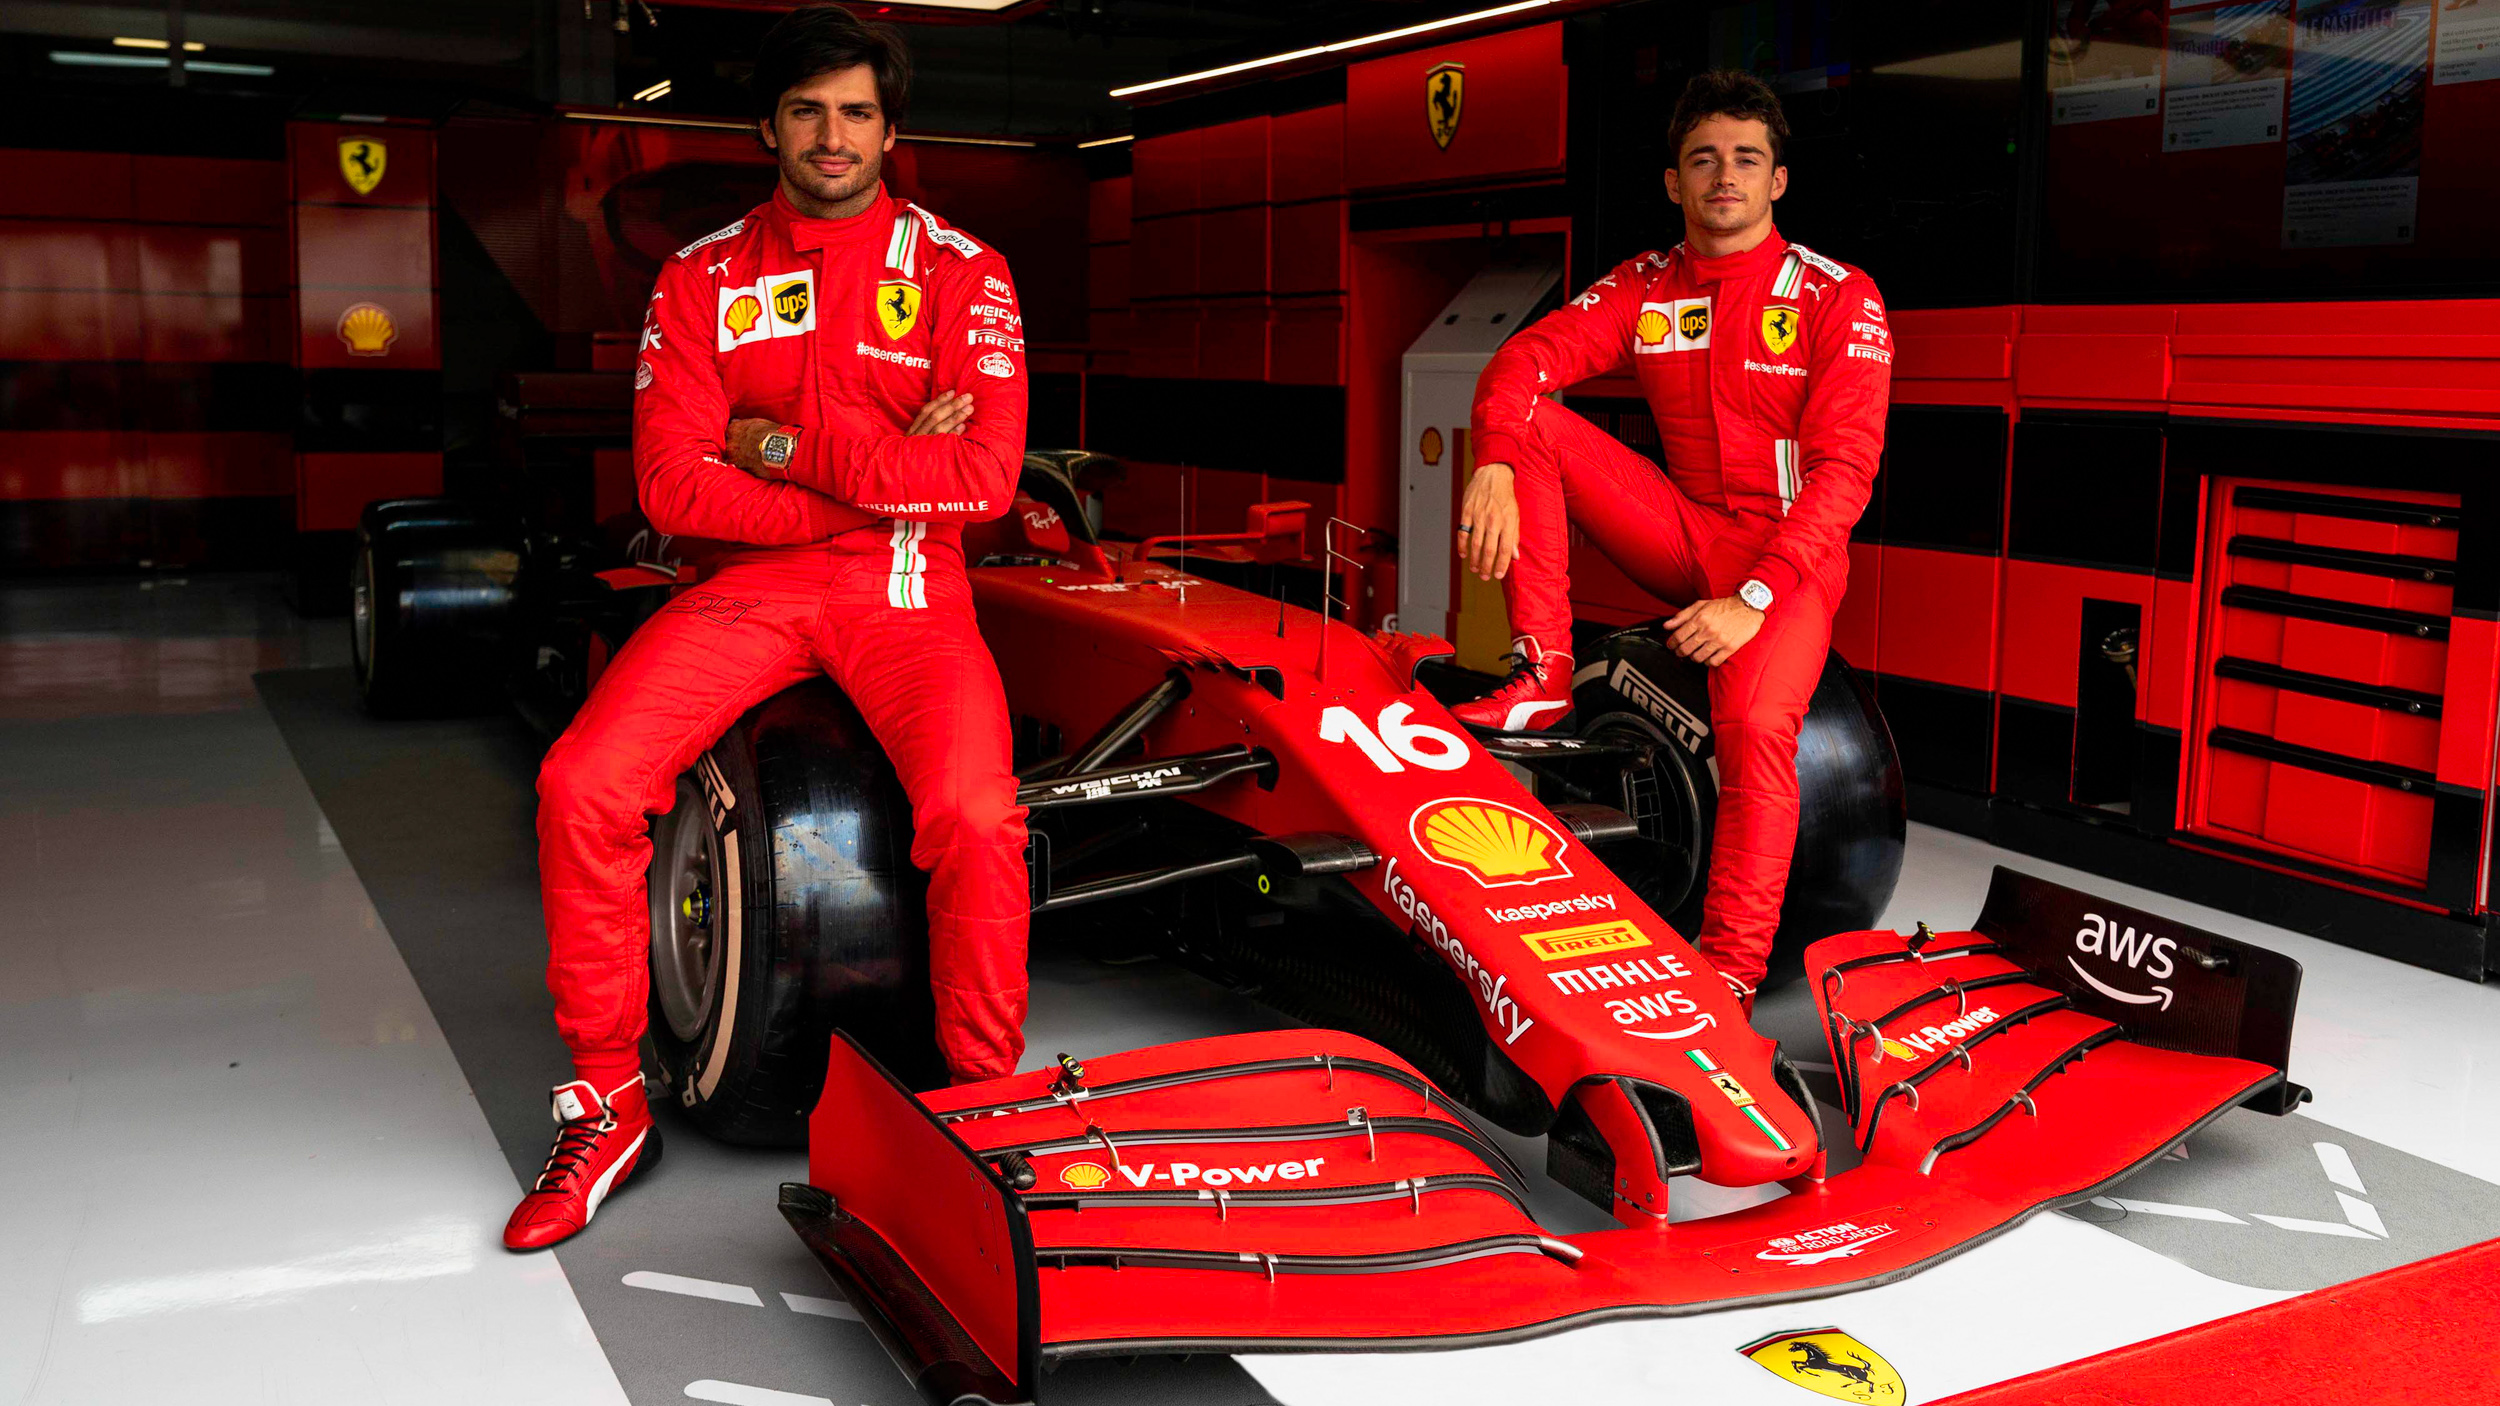 Ferrari 選擇 AWS 作為雲端服務供應商  加強汽車及賽事創新發展